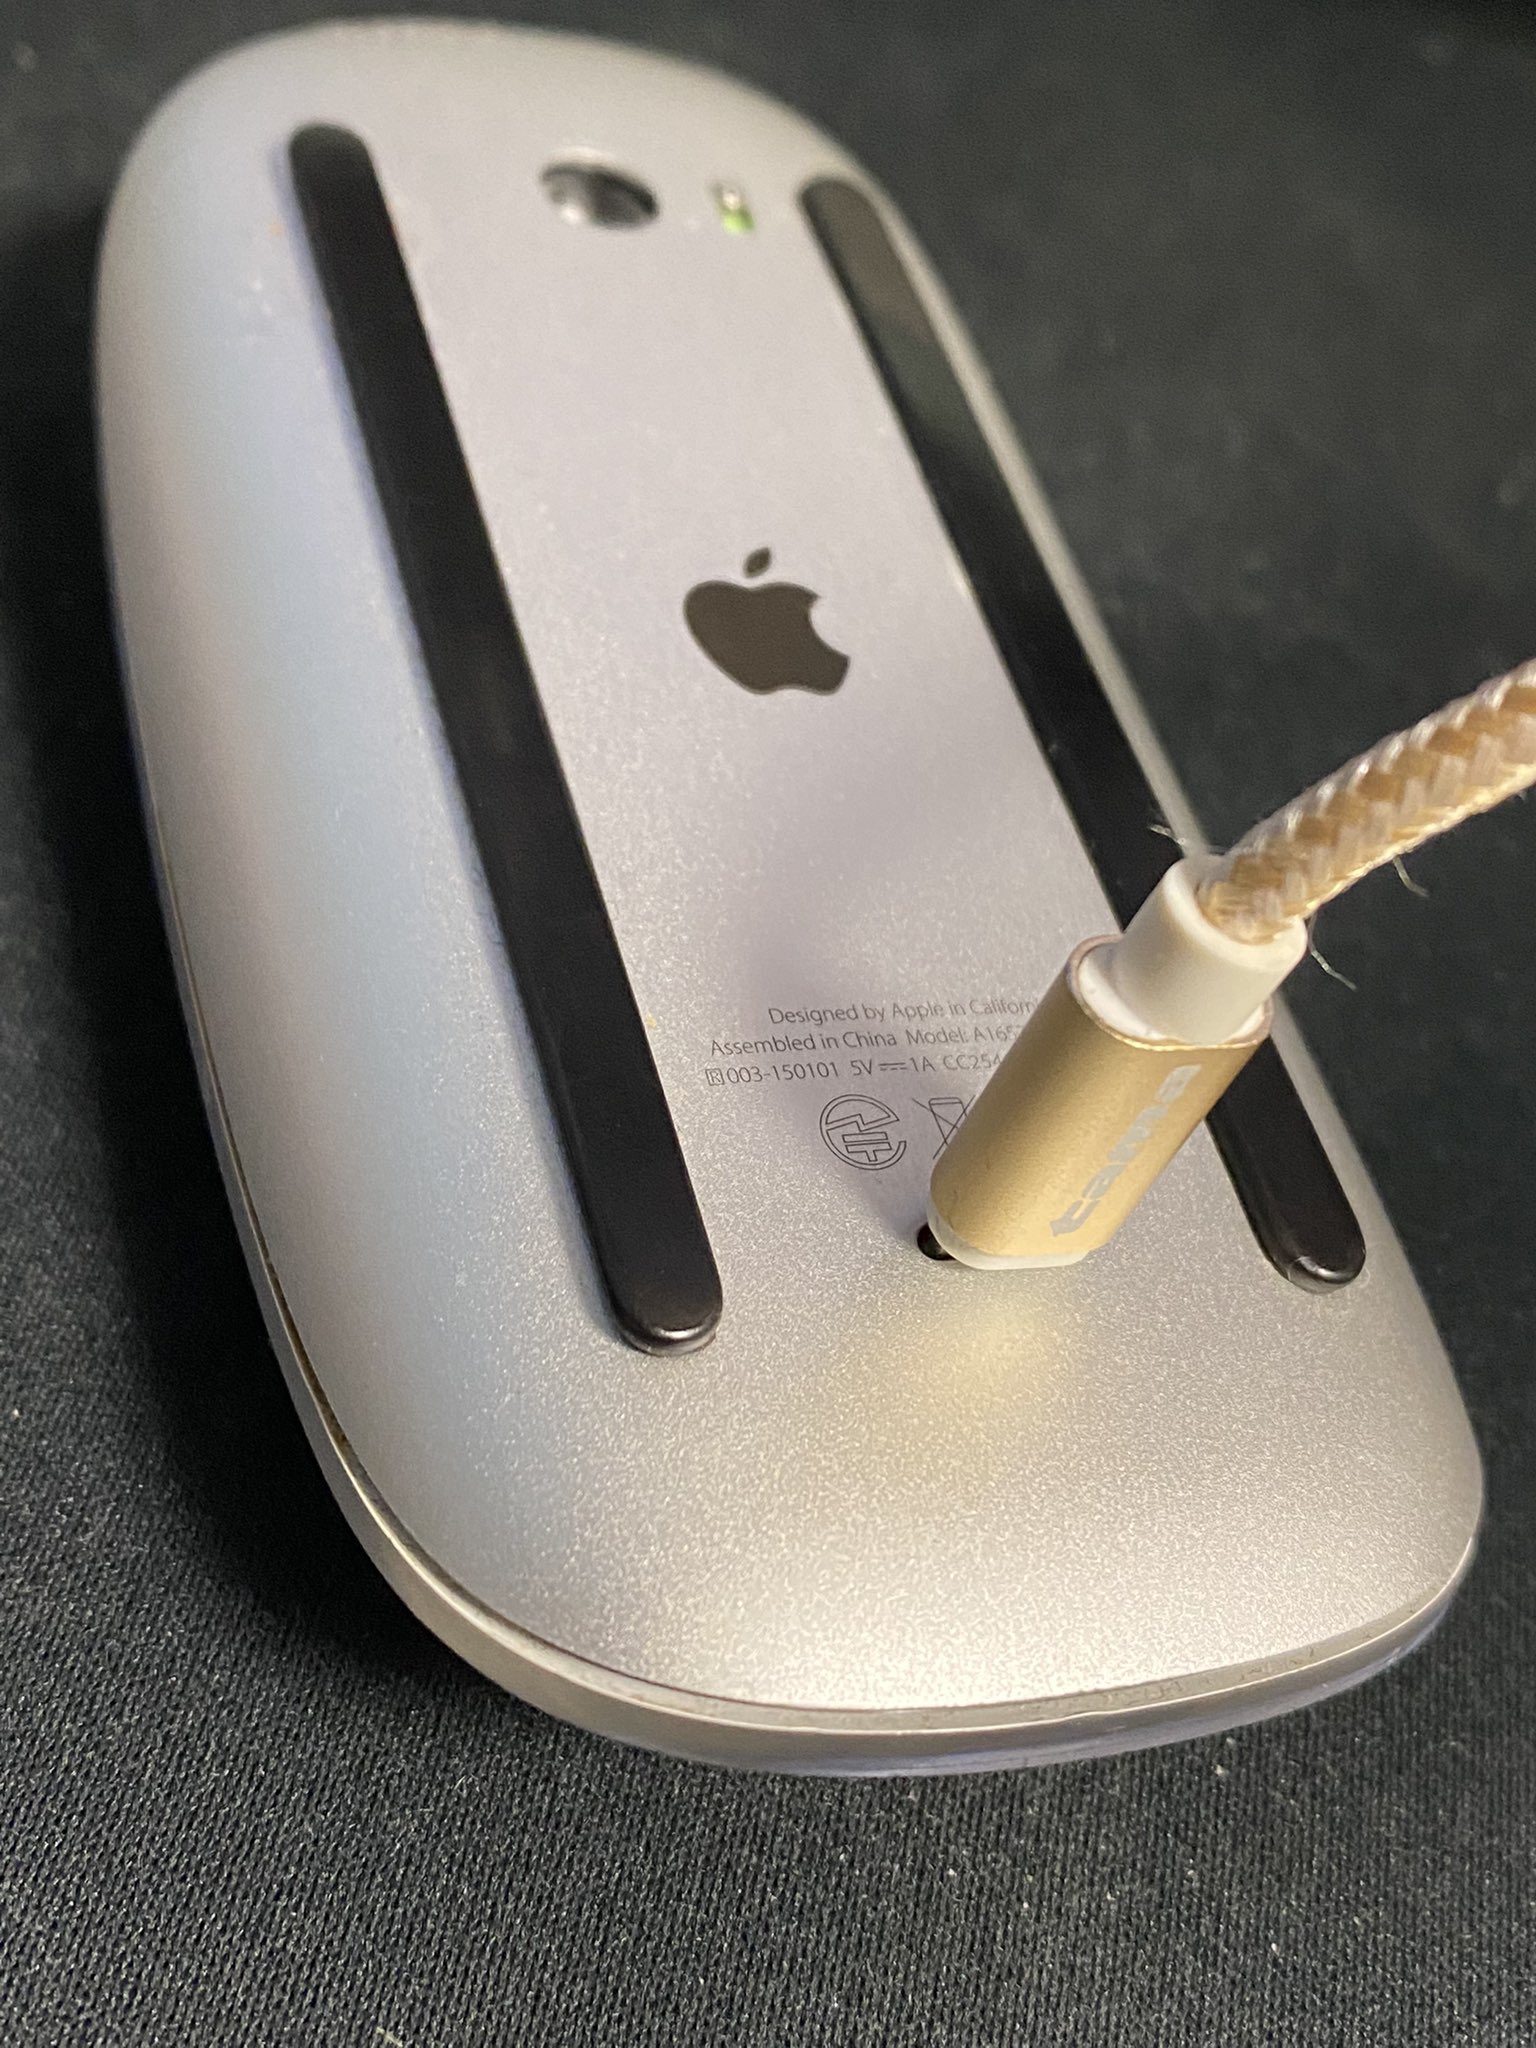 Apple純正マウスの充電コネクタが…裏側にあって使いにくい! | 話題の画像プラス